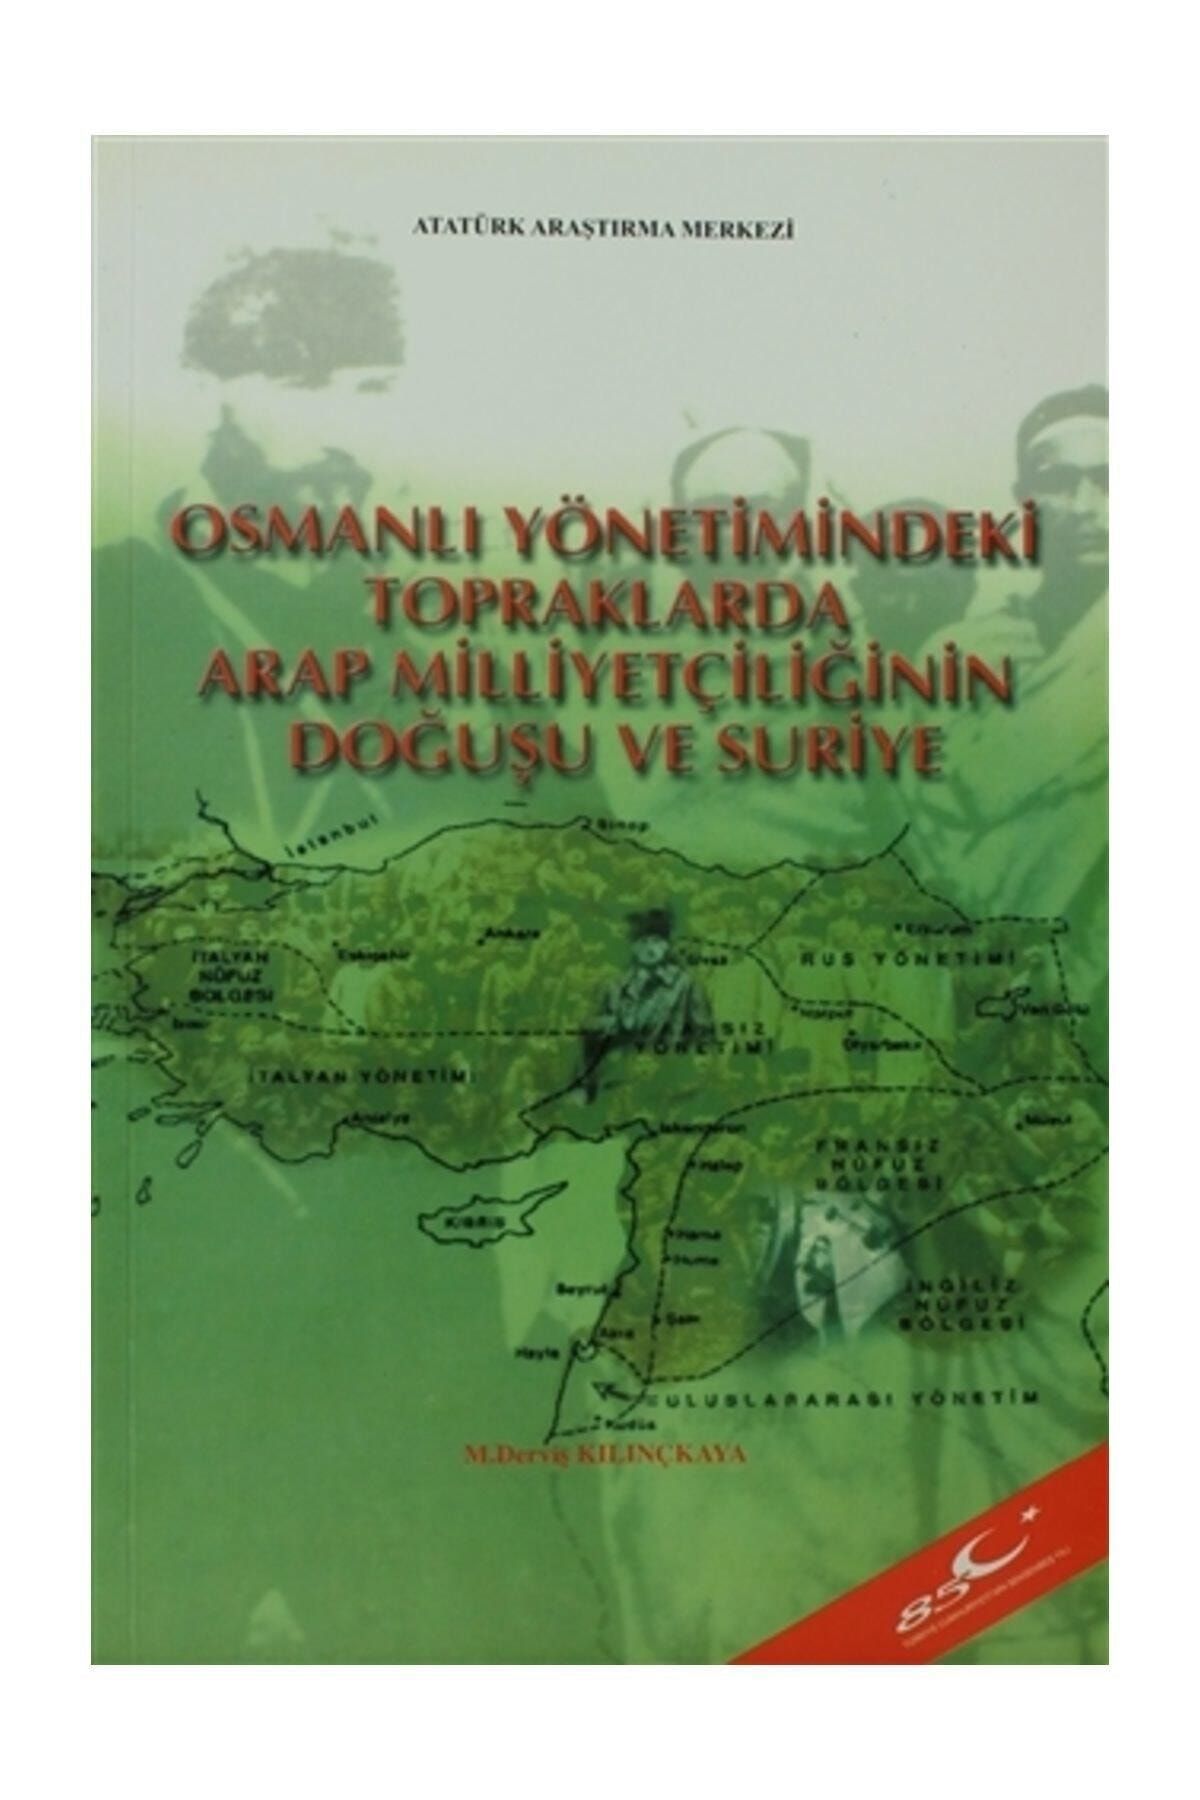 Atatürk Araştırma Merkezi Osmanlı Yönetimindeki Topraklarda Arap Milliyetçiliğinin Doğuşu ve Suriye - M. Derviş Kılınçkaya